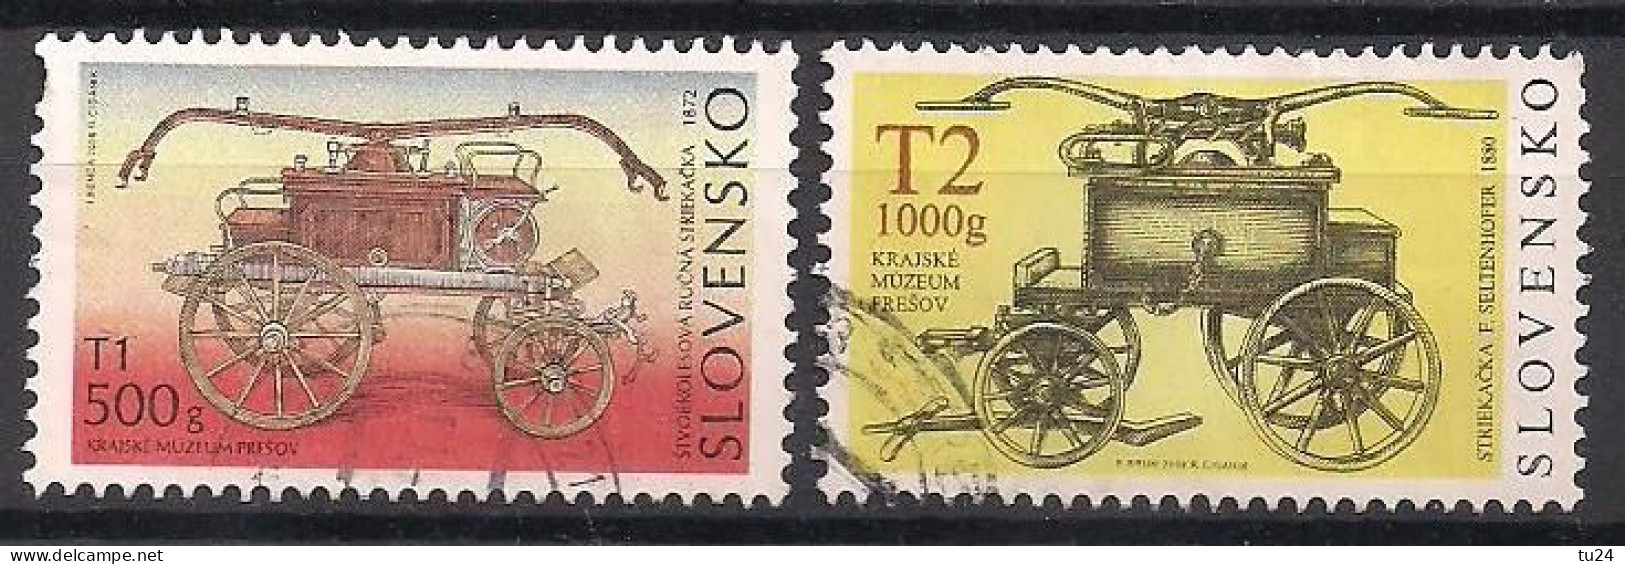 Slowakei  (2008)  Mi.Nr.  579 + 580  Gest. / Used  (4bc31) - Used Stamps